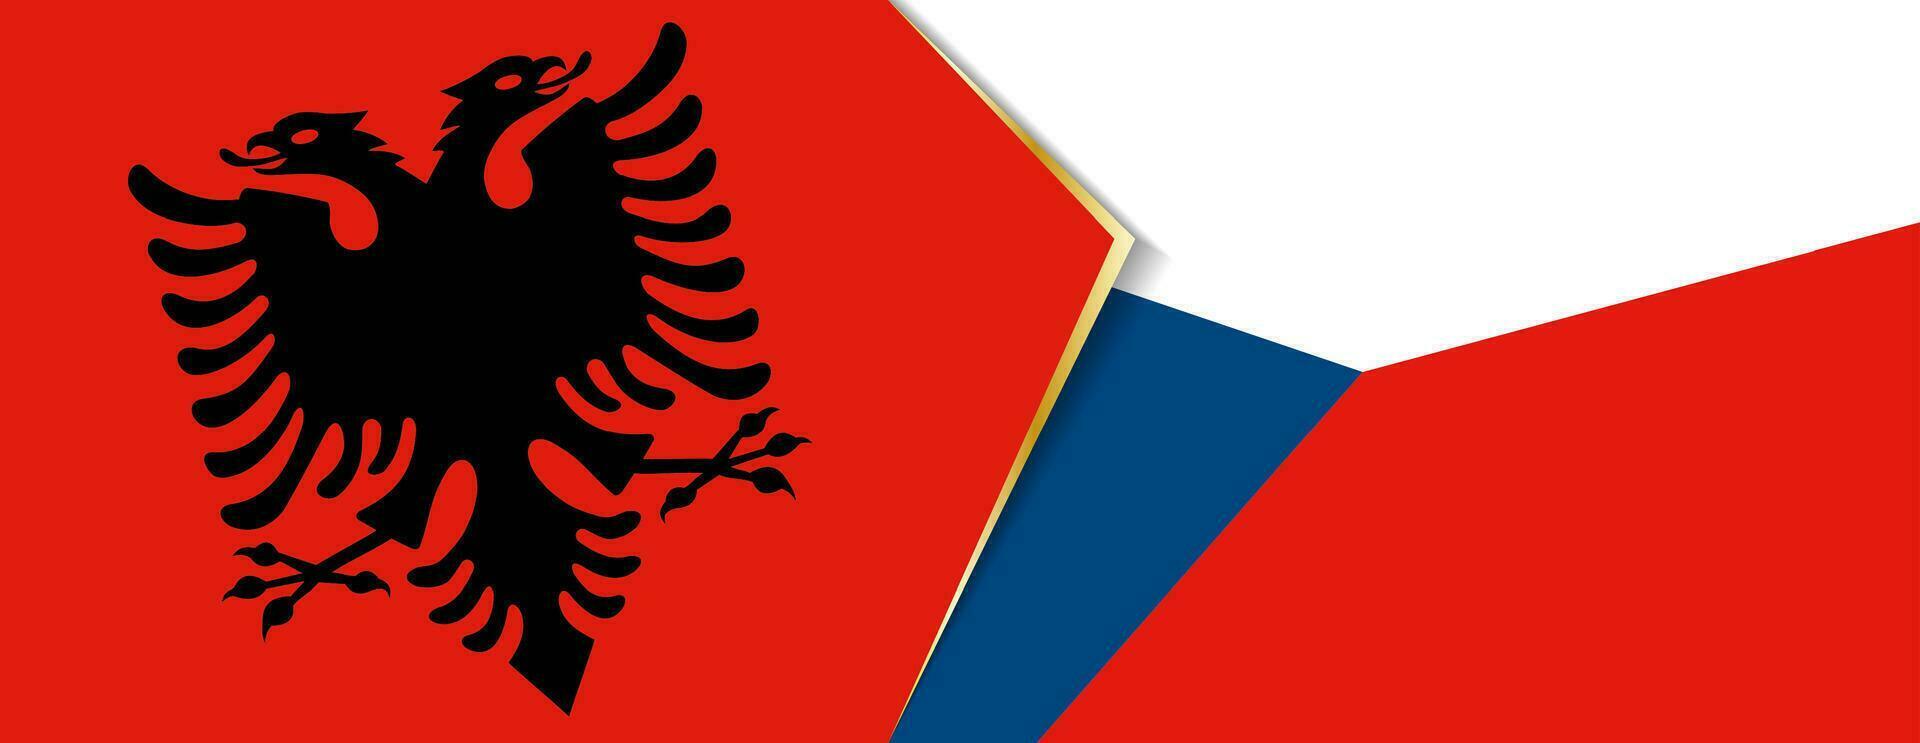 Albânia e tcheco república bandeiras, dois vetor bandeiras.